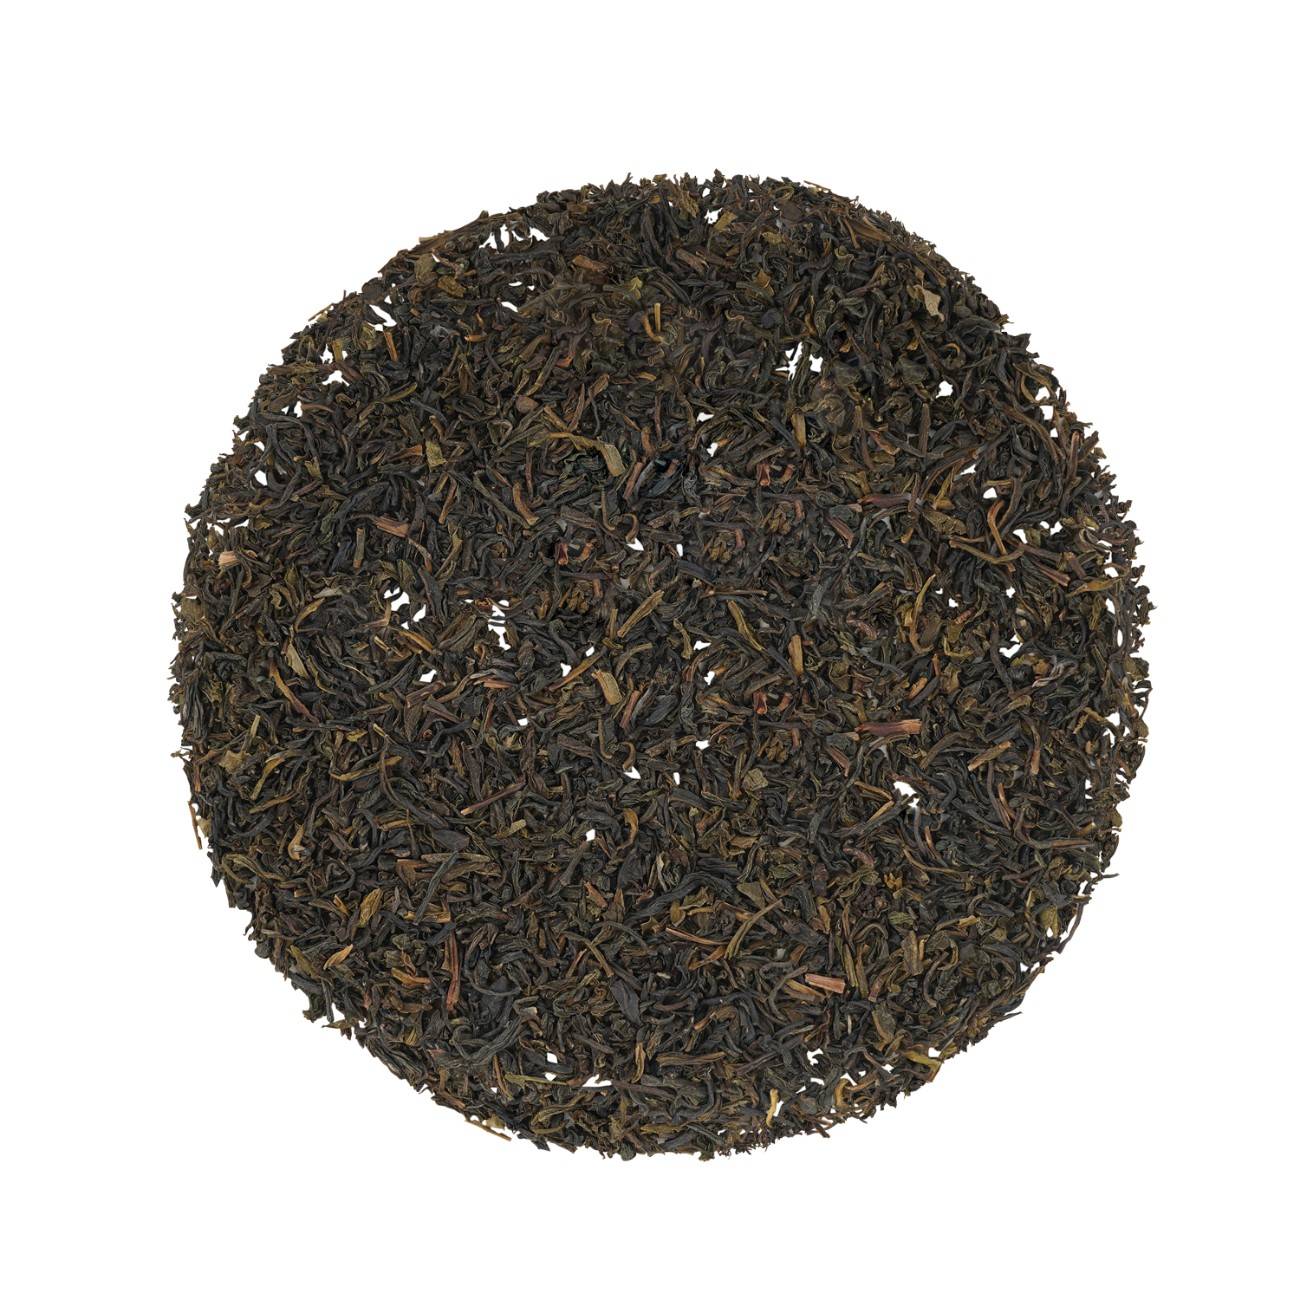 Earl Grey Green Tea - 20 Tea Bags